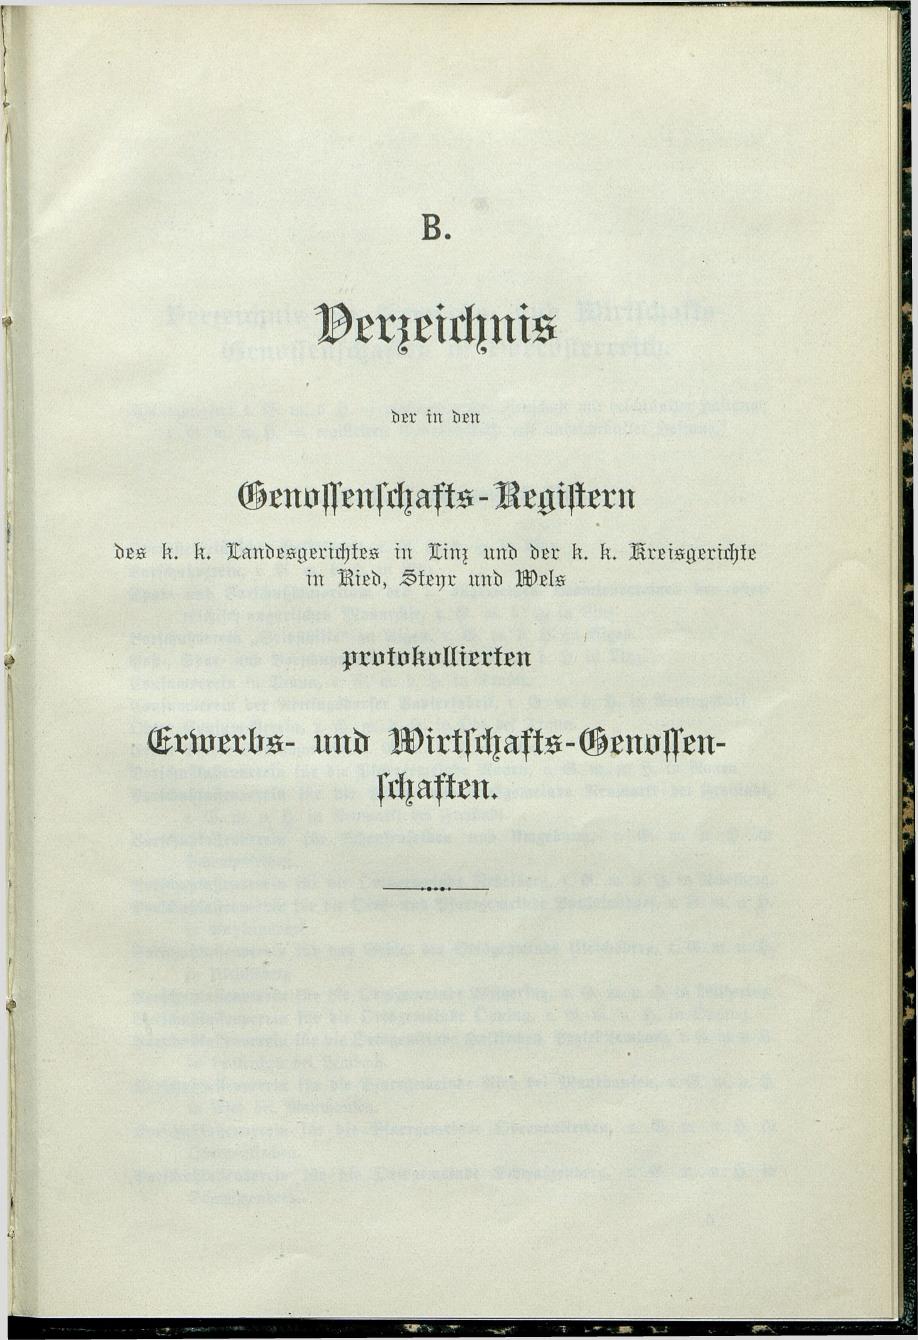 Verzeichnis der protokollierten Firmen und Genossenschaften in Oberösterreich 1908 - Seite 67